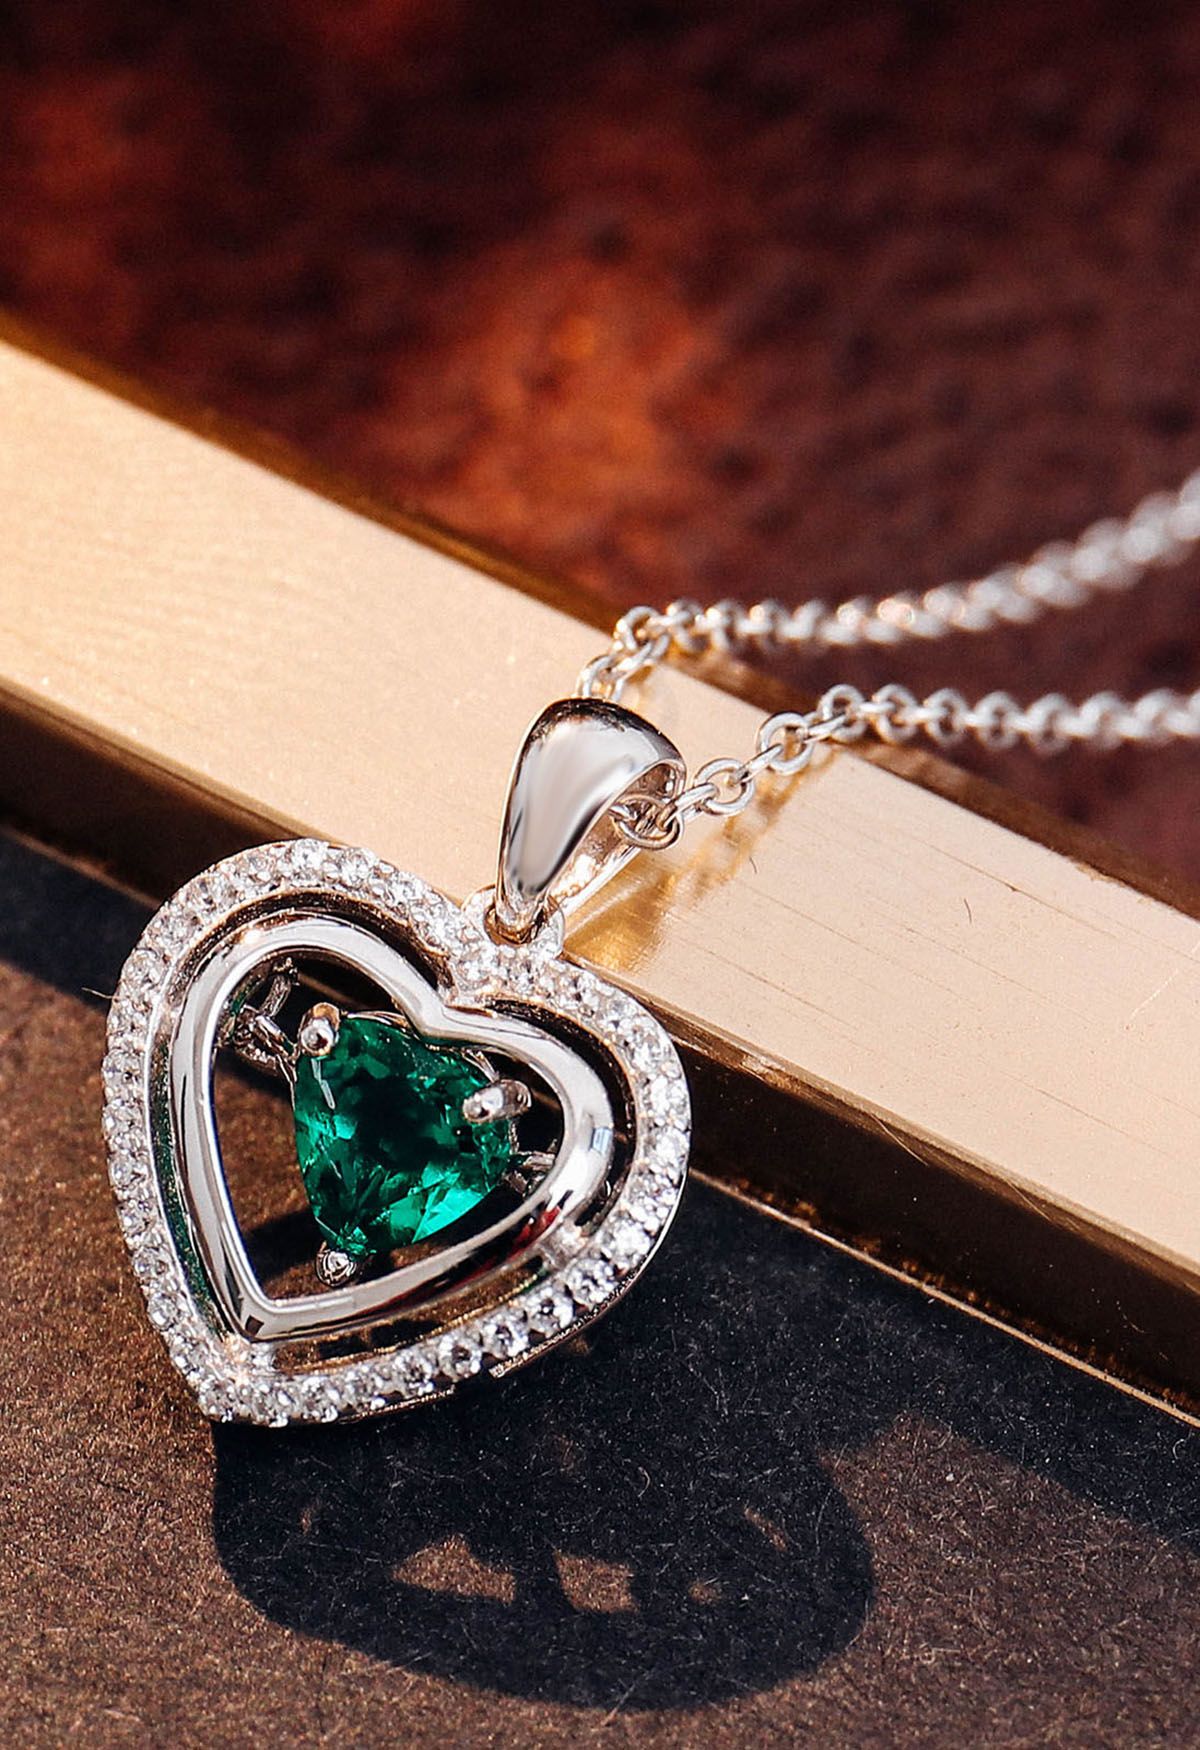 Hollow Heart Shape Emerald Gem Necklace